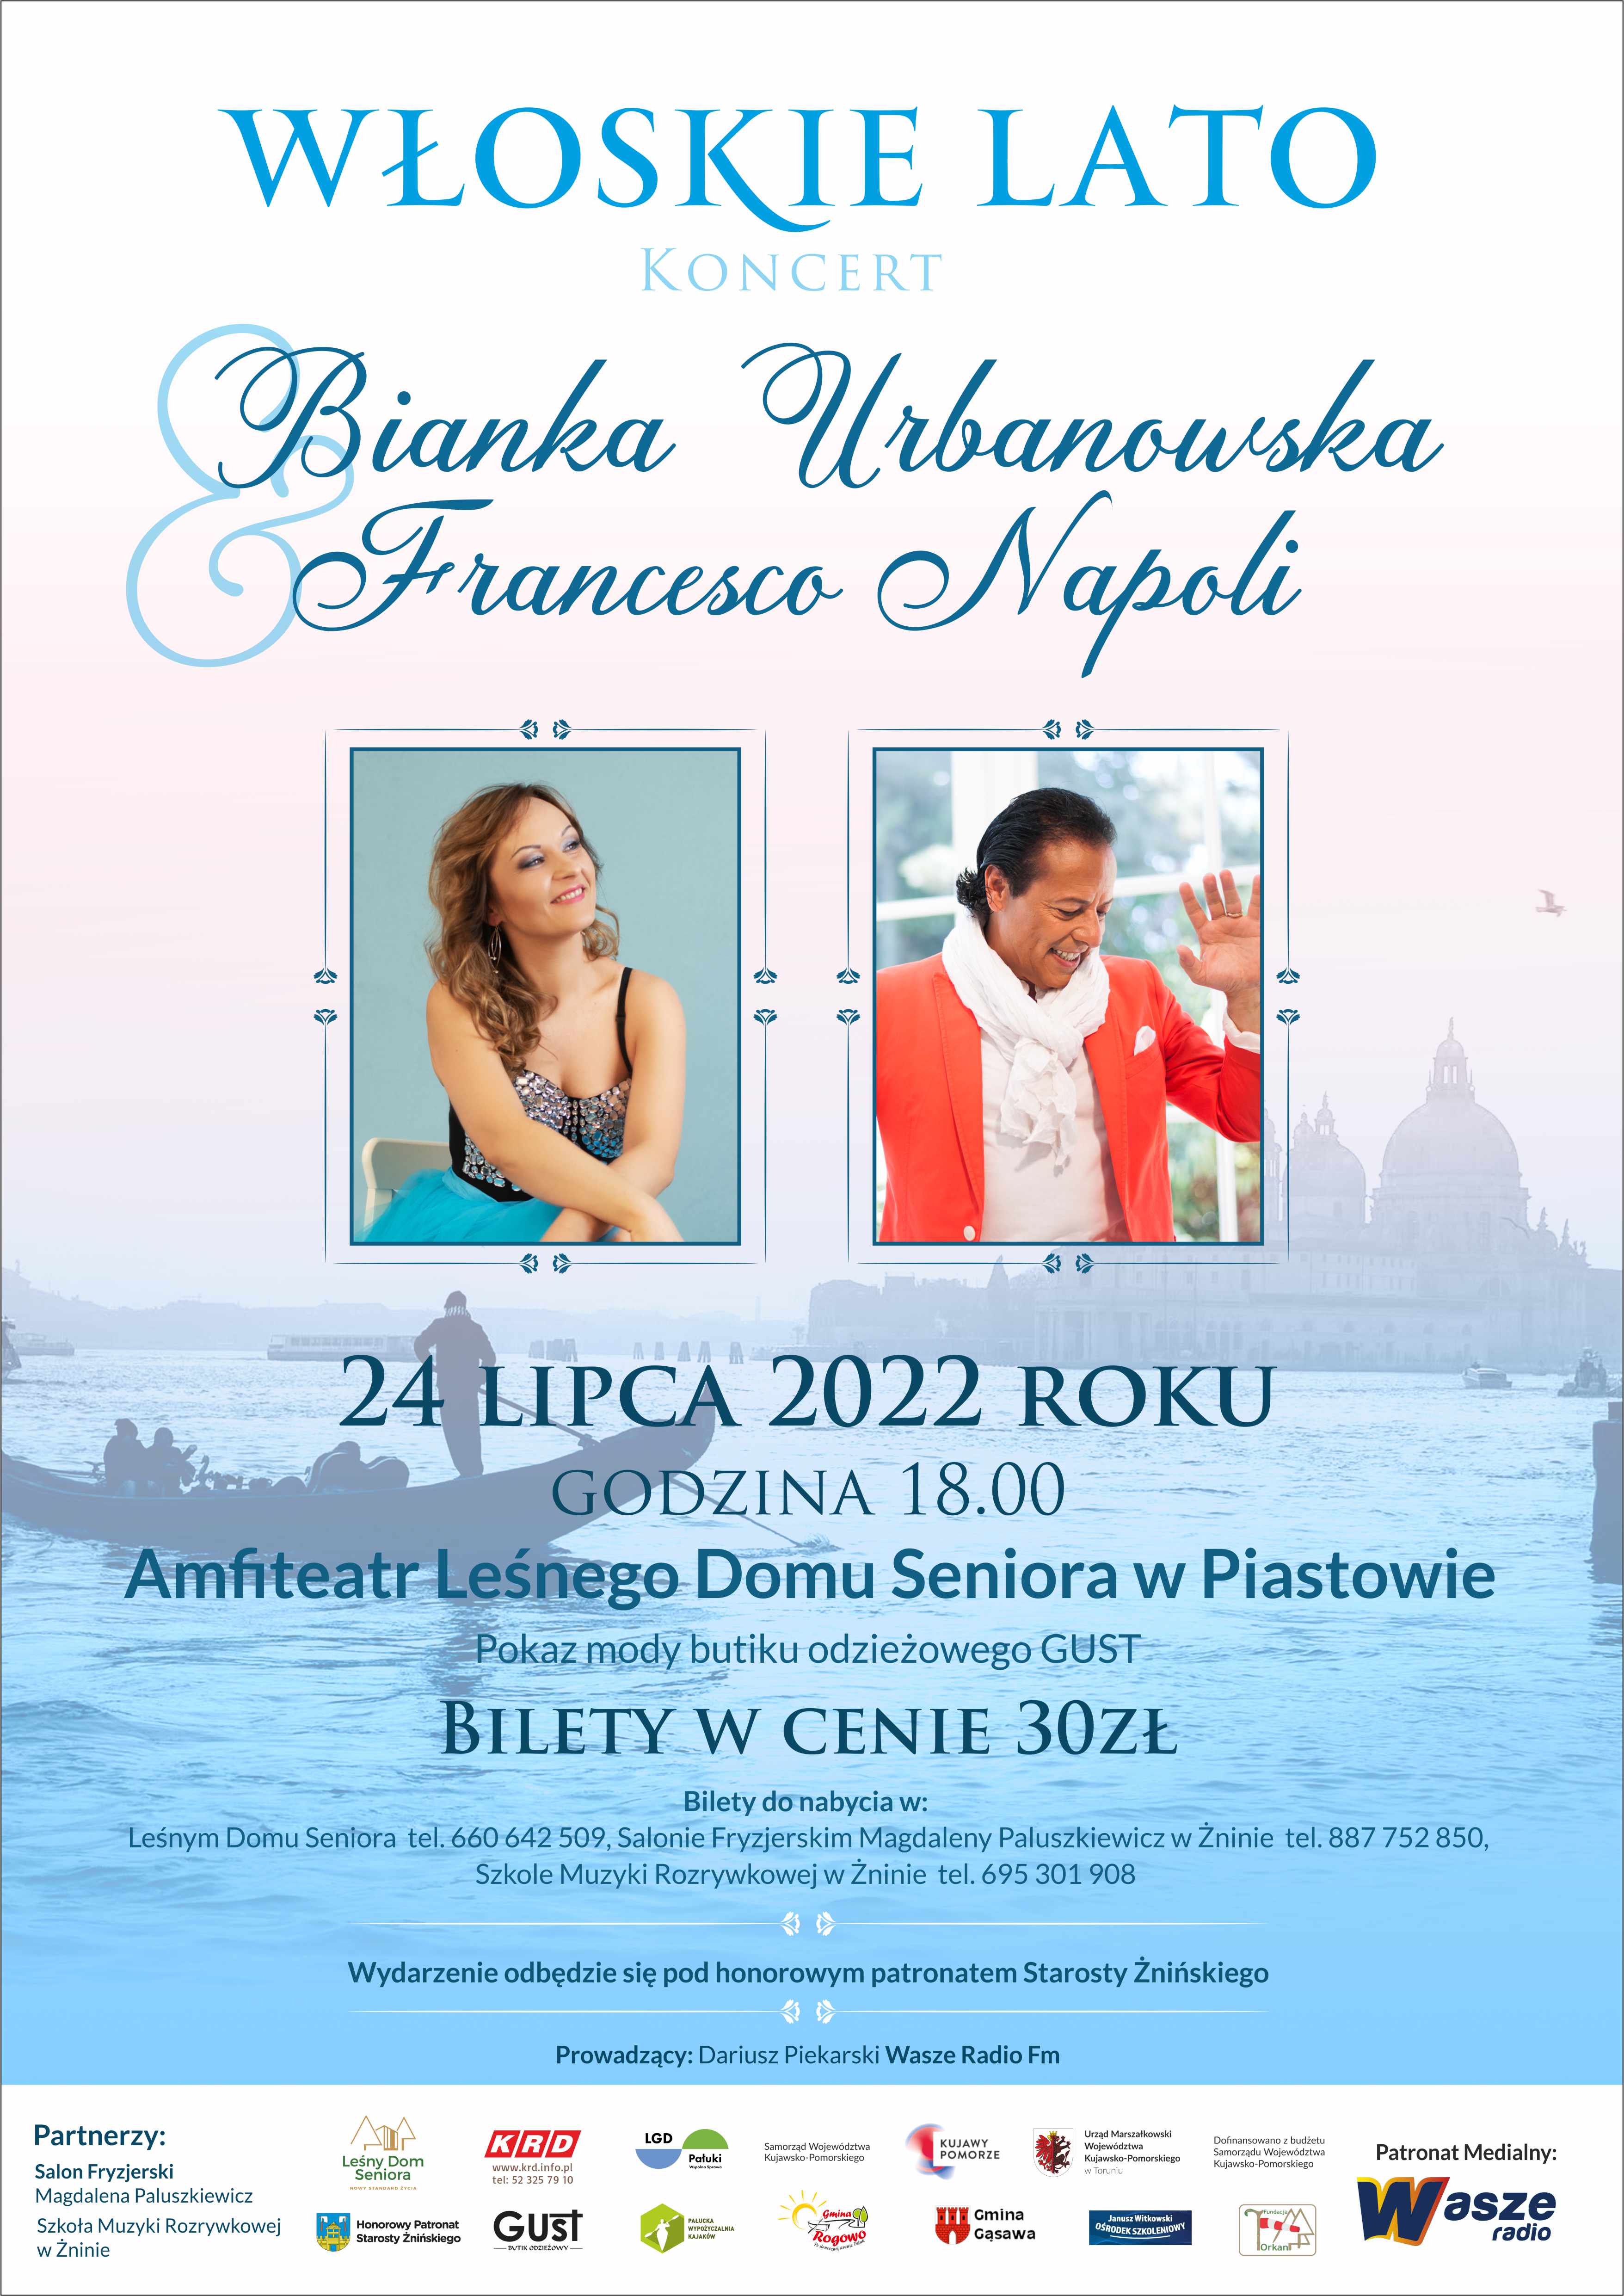 Koncert Włoskie Lato - 24 lipca 2022 roku - godzina 18:00 - Leśny Dom Seniora w Piastowie